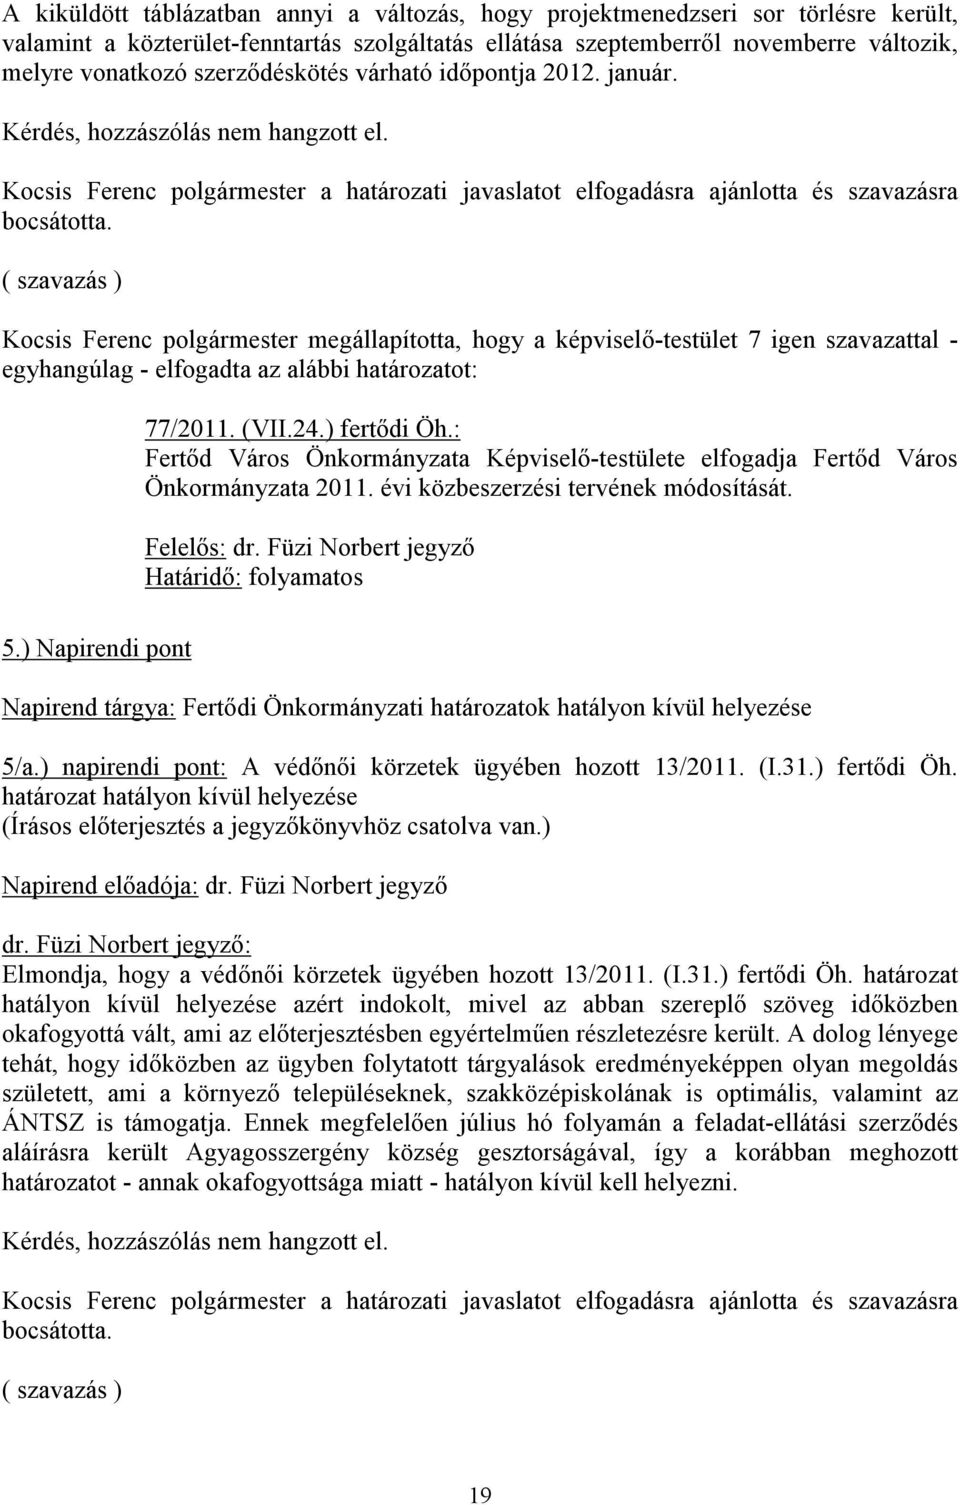 ( szavazás ) Kocsis Ferenc megállapította, hogy a képviselő-testület 7 igen szavazattal - egyhangúlag - elfogadta az alábbi határozatot: 77/2011. (VII.24.) fertődi Öh.